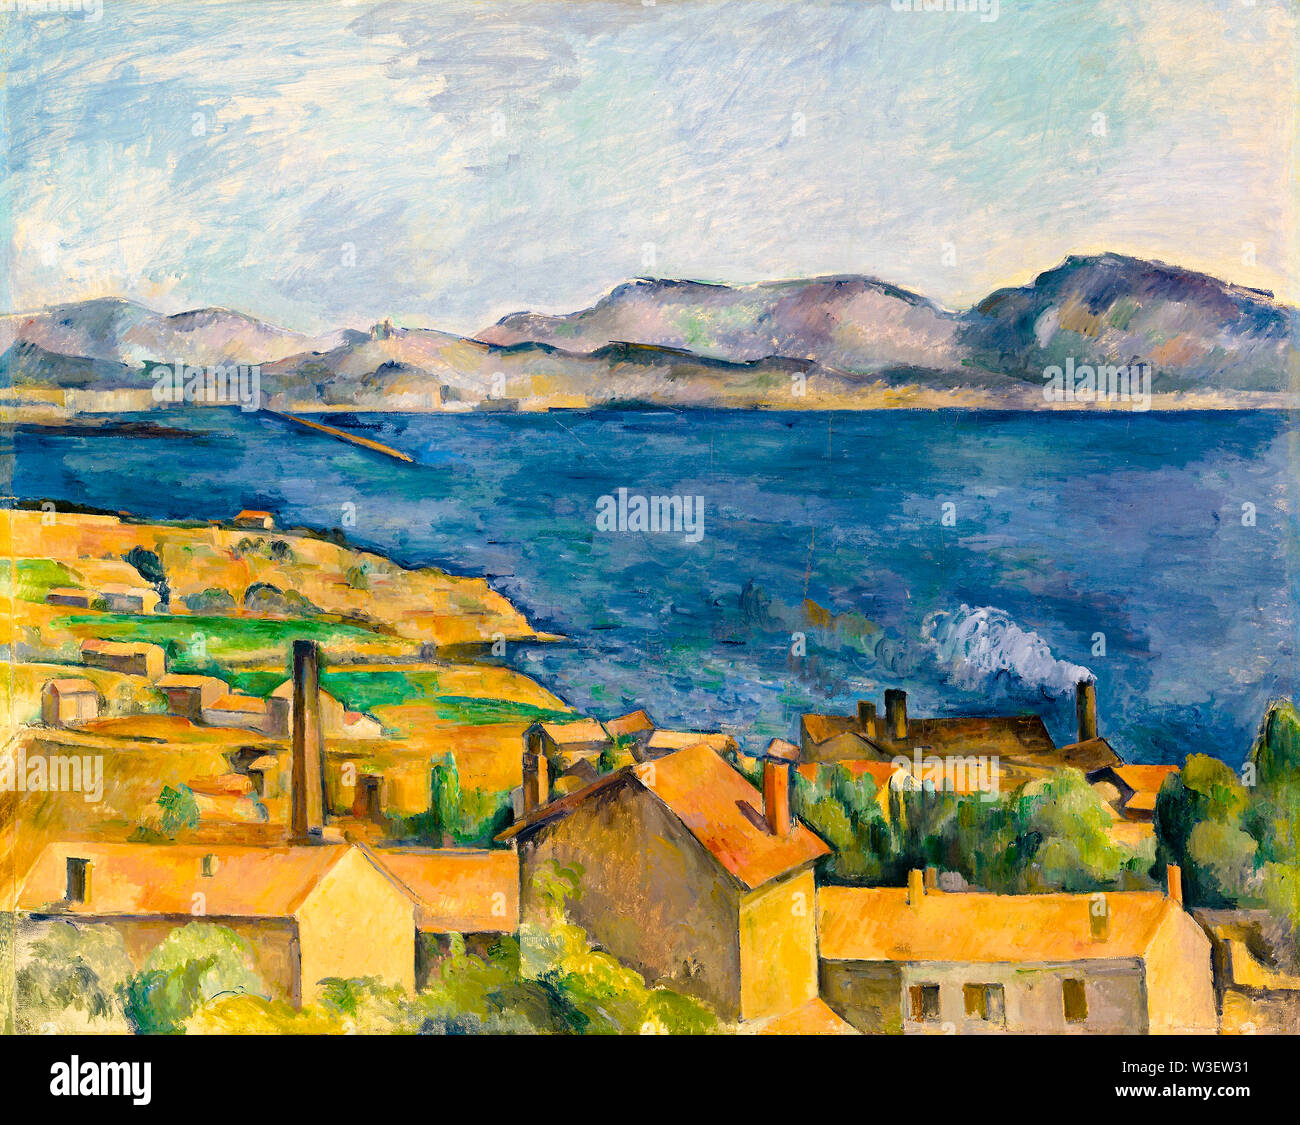 Paul Cézanne, la baie de Marseille vu de l'Estaque, la peinture de paysage, vers 1885 Banque D'Images